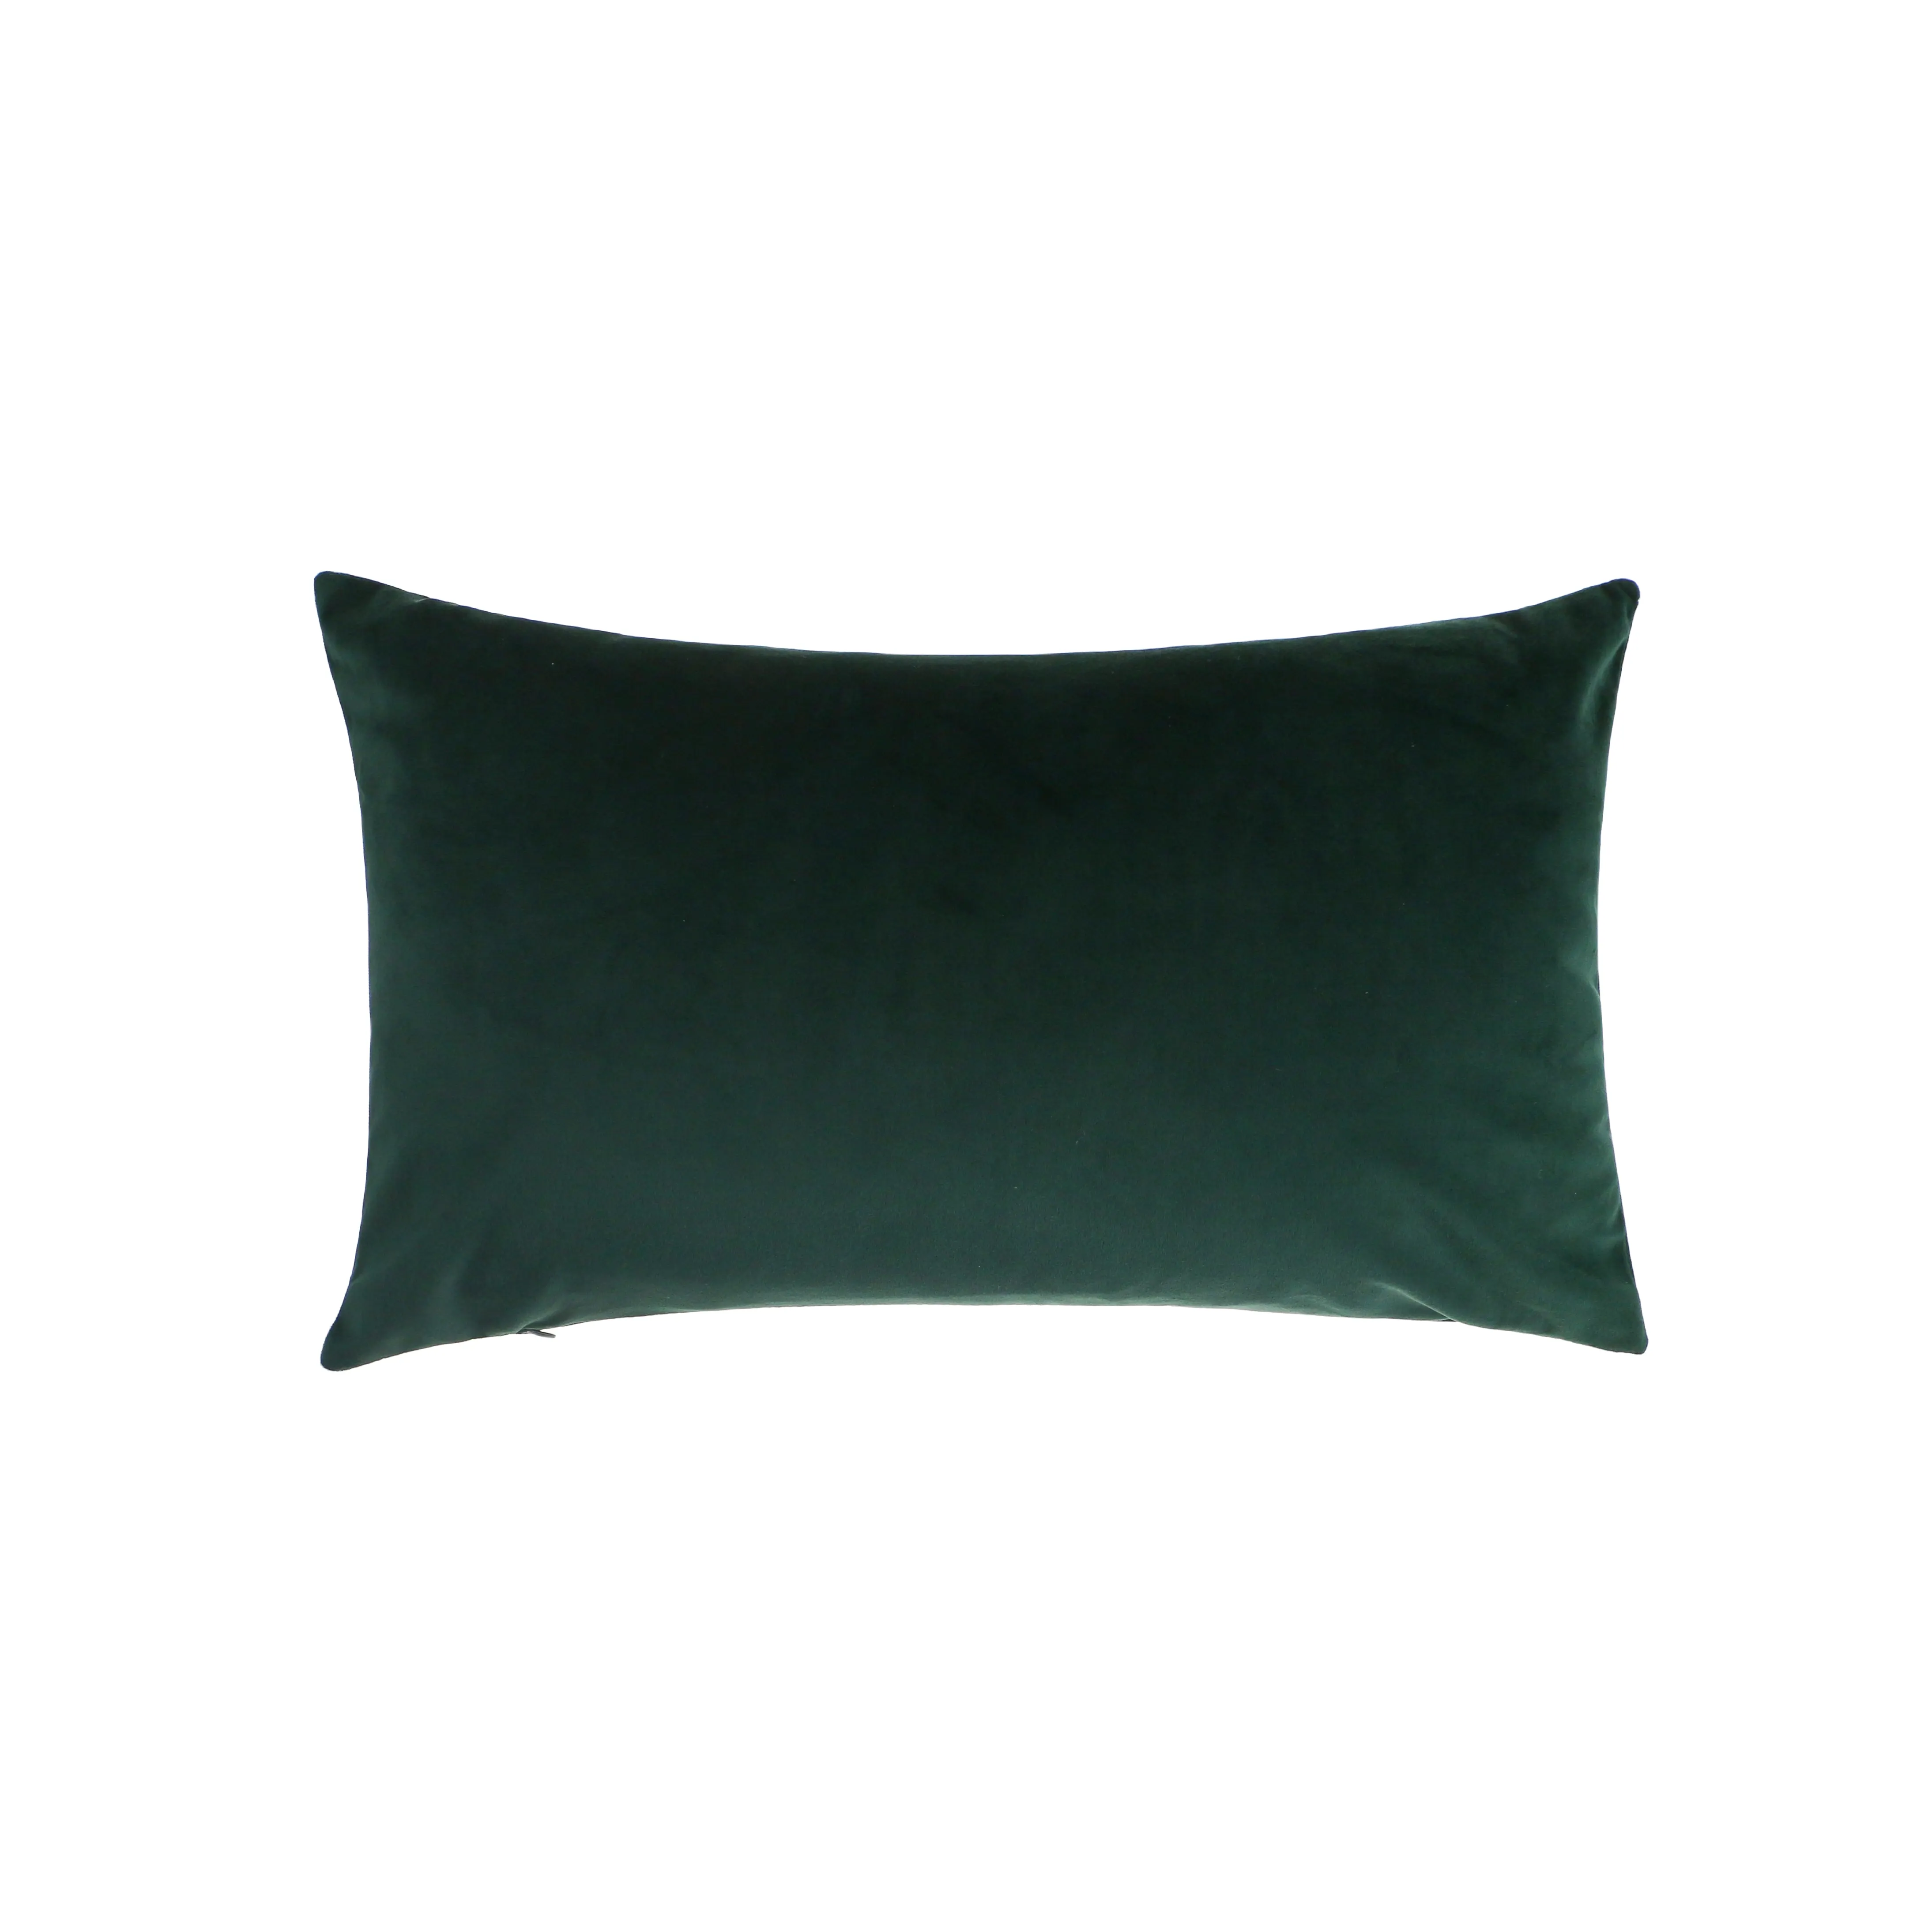 غطاء وسادة مخملي سادة أخضر غامق مقاس 50 سم × 30 سم غطاء وسادة ديكور للبيع بالجملة من المصنع